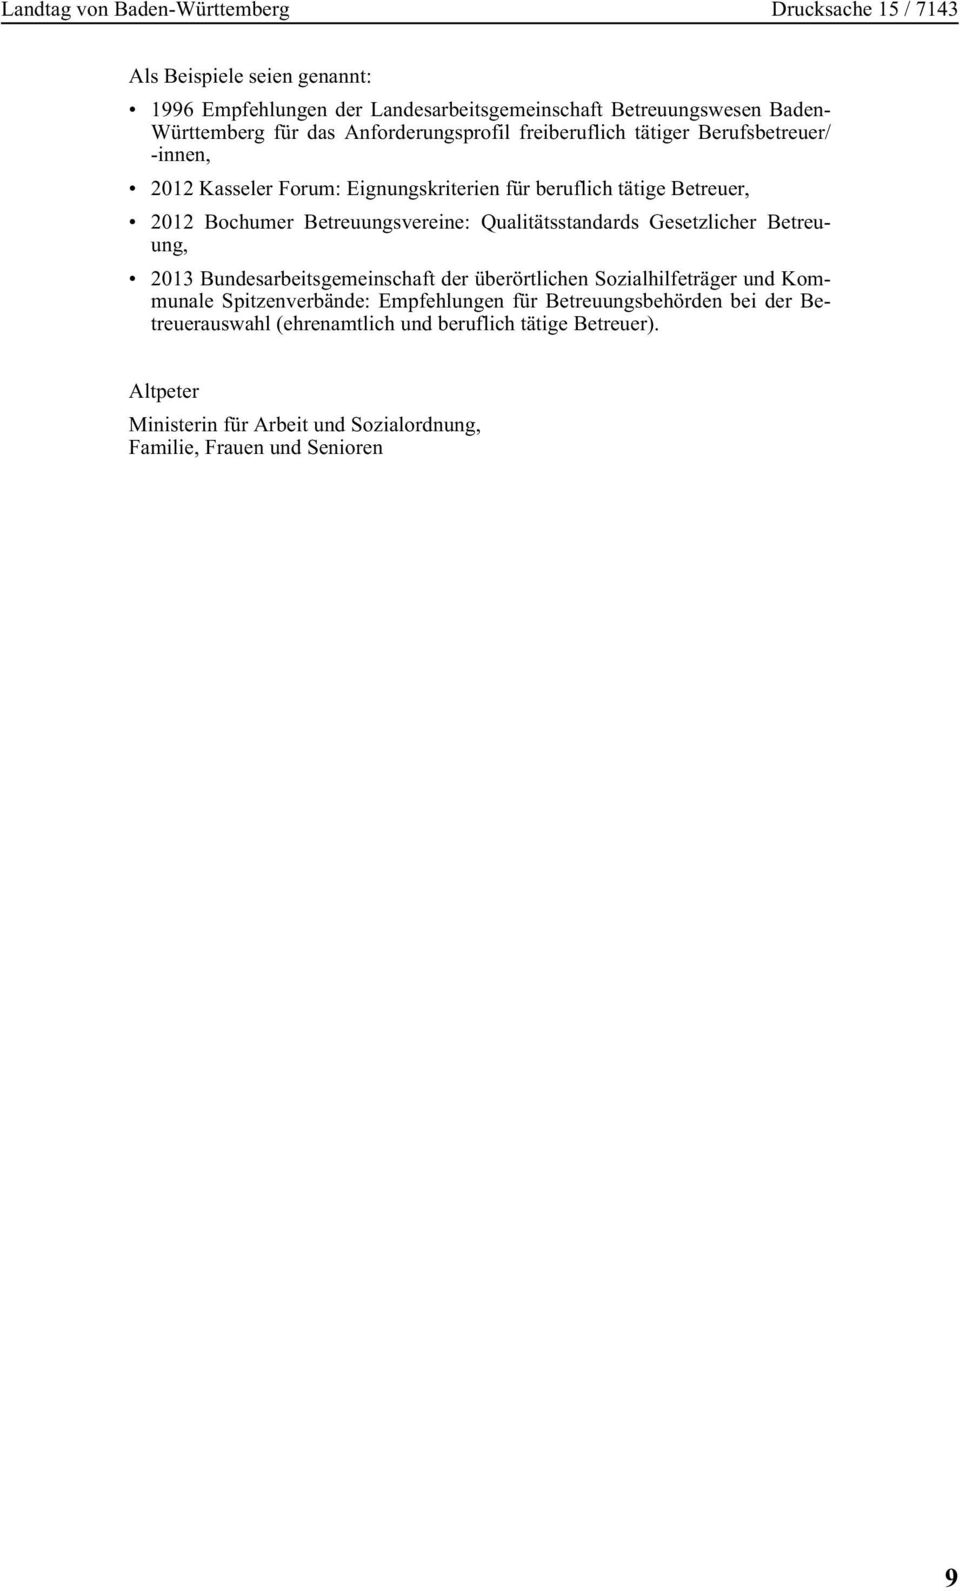 Gesetzlicher Betreuung, 2013 Bundesarbeitsgemeinschaft der überörtlichen Sozialhilfeträger und Kommunale Spitzenverbände: Empfehlungen für